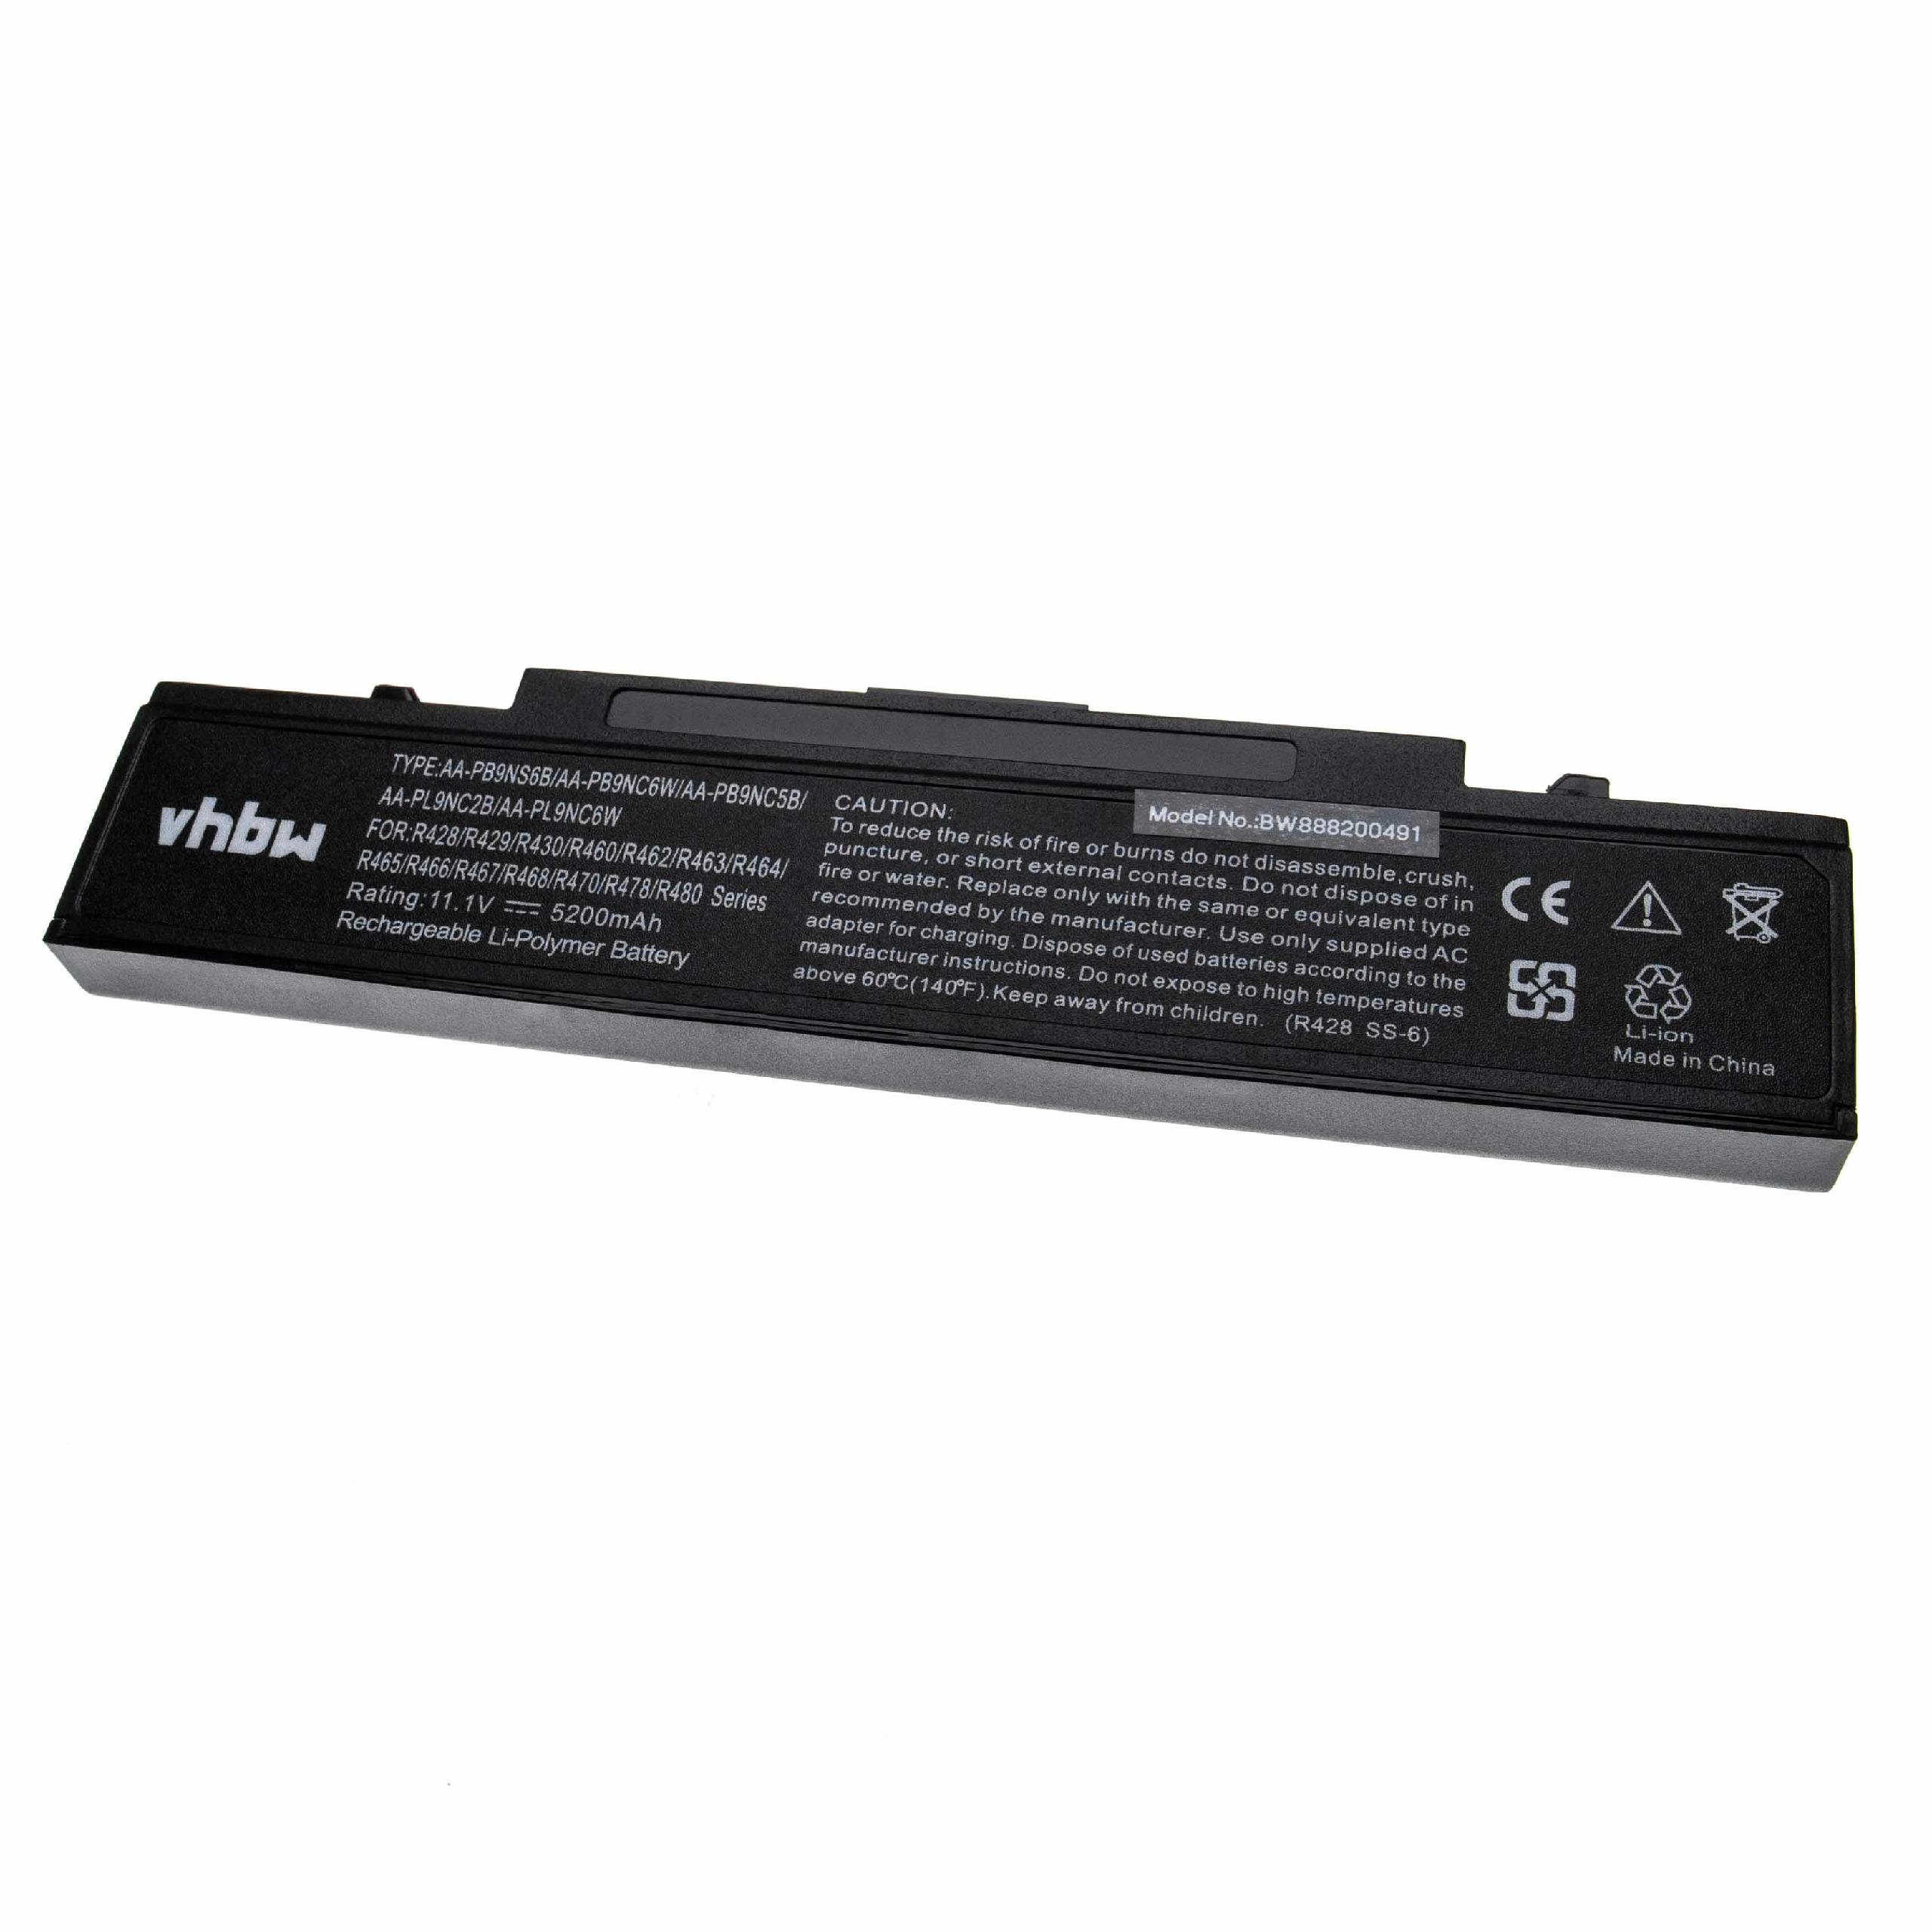 Batterie remplace Samsung AA-PB6NC6B, AA-PB6NC6W pour ordinateur portable - 5200mAh 11,1V Li-ion, noir